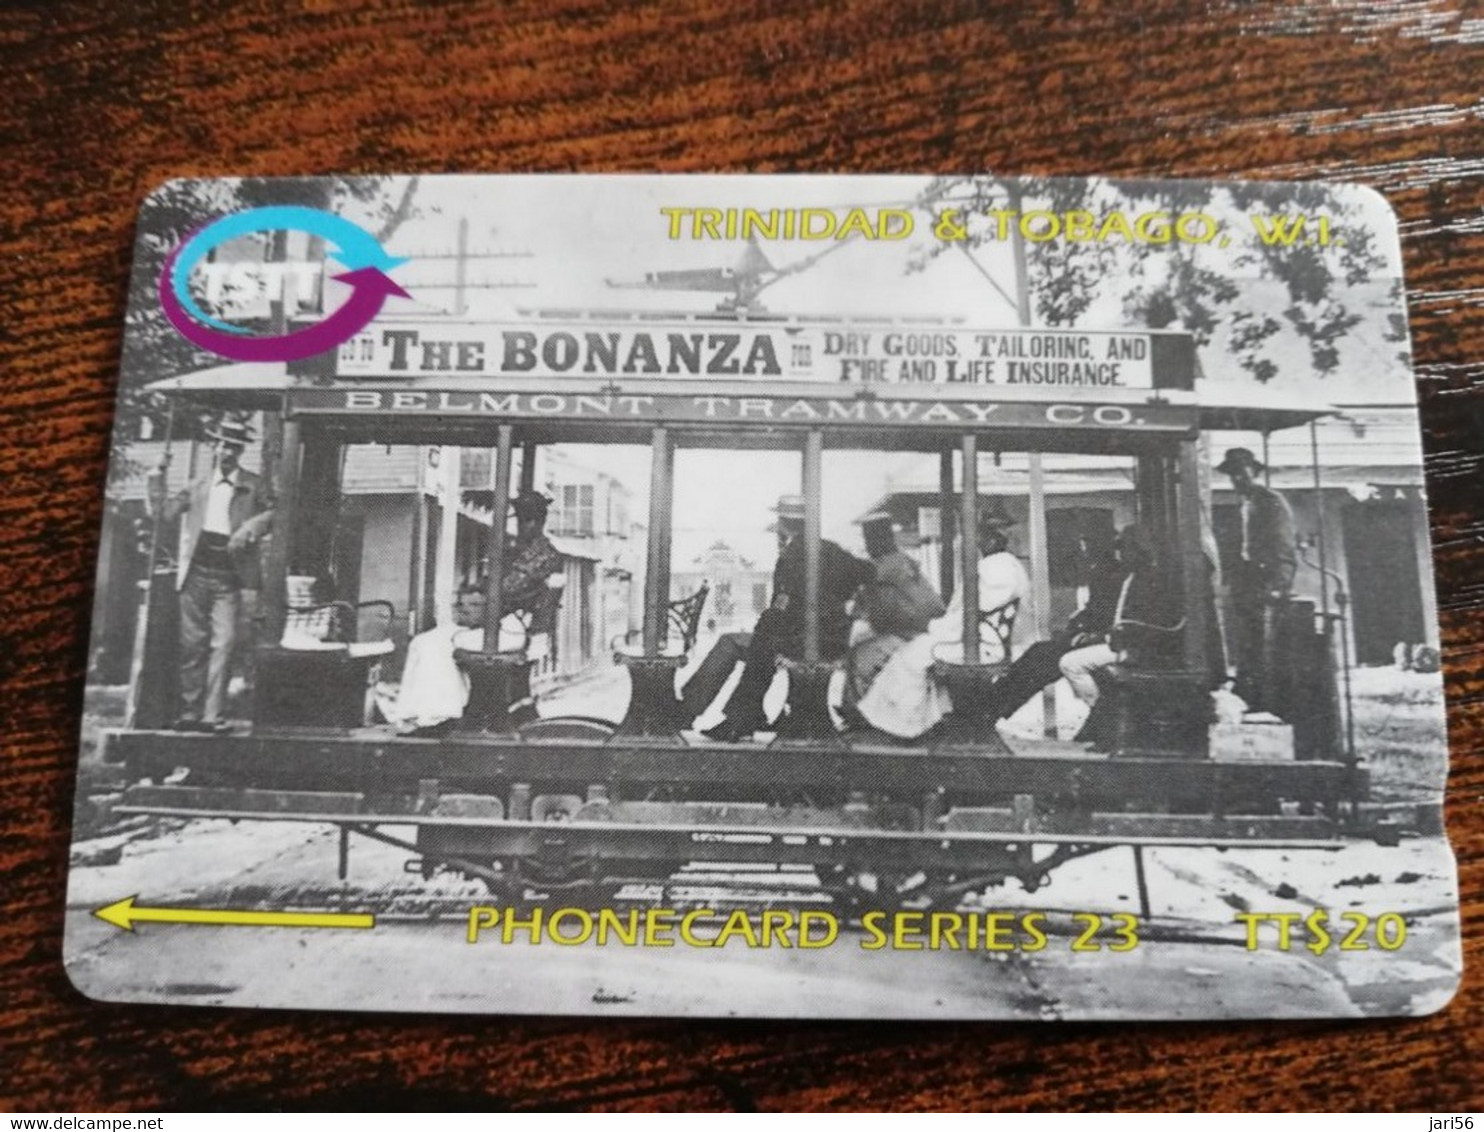 TRINIDAD & TOBAGO  GPT CARD    $20,-  273CCTA    THE BELMONT TRAMWAY             Fine Used Card        ** 8912** - Trinidad & Tobago